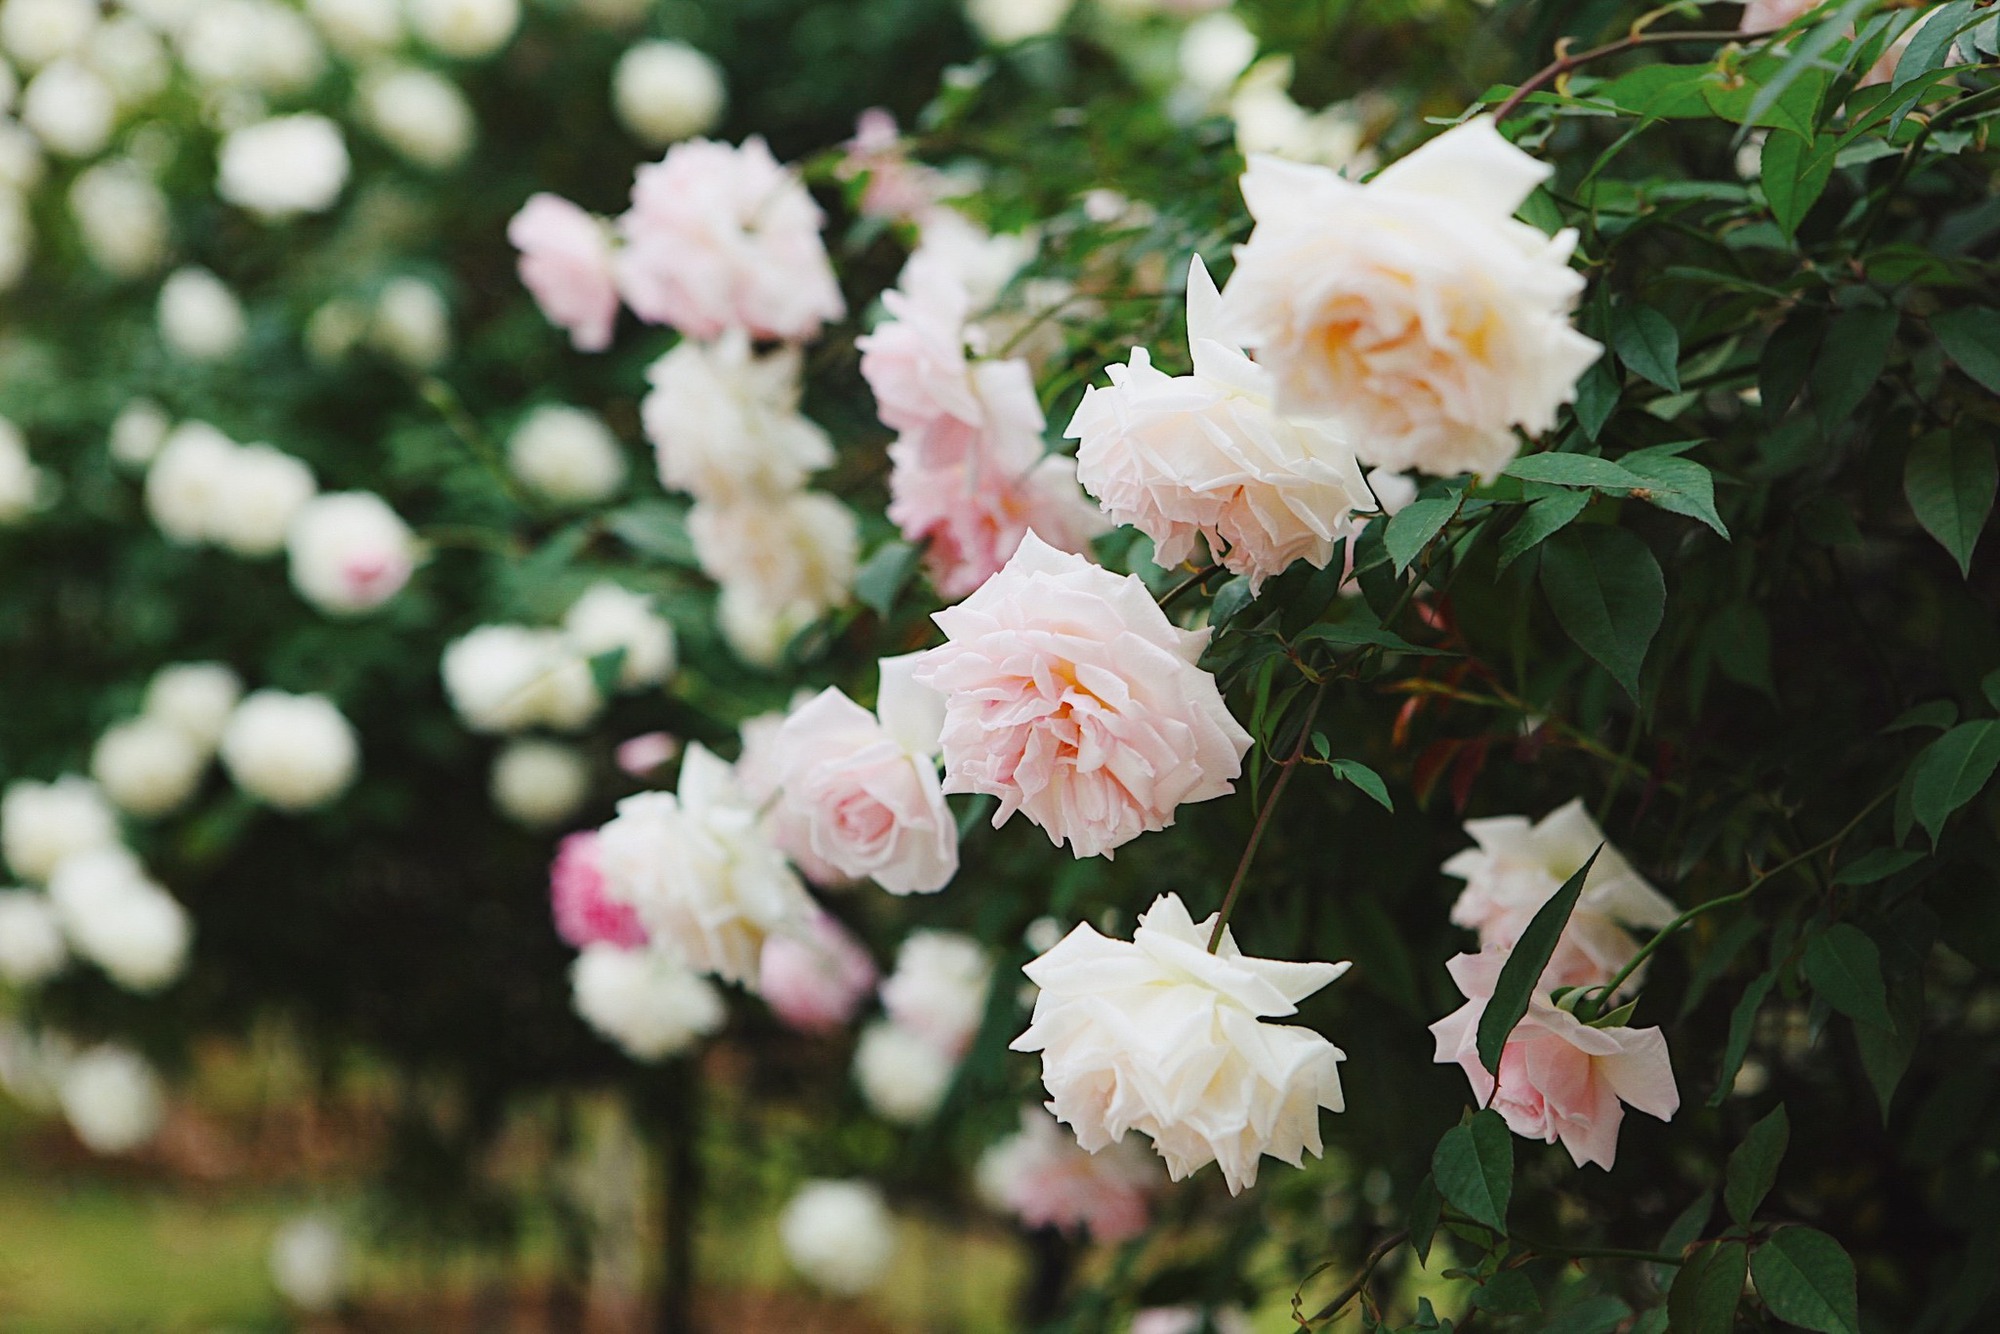 Trường đại học gây sốt với vườn hồng hàng trăm loại đẹp như cổ tích: Chỉ ngắm thôi cũng đã đầy cảm hứng học tập- Ảnh 6.